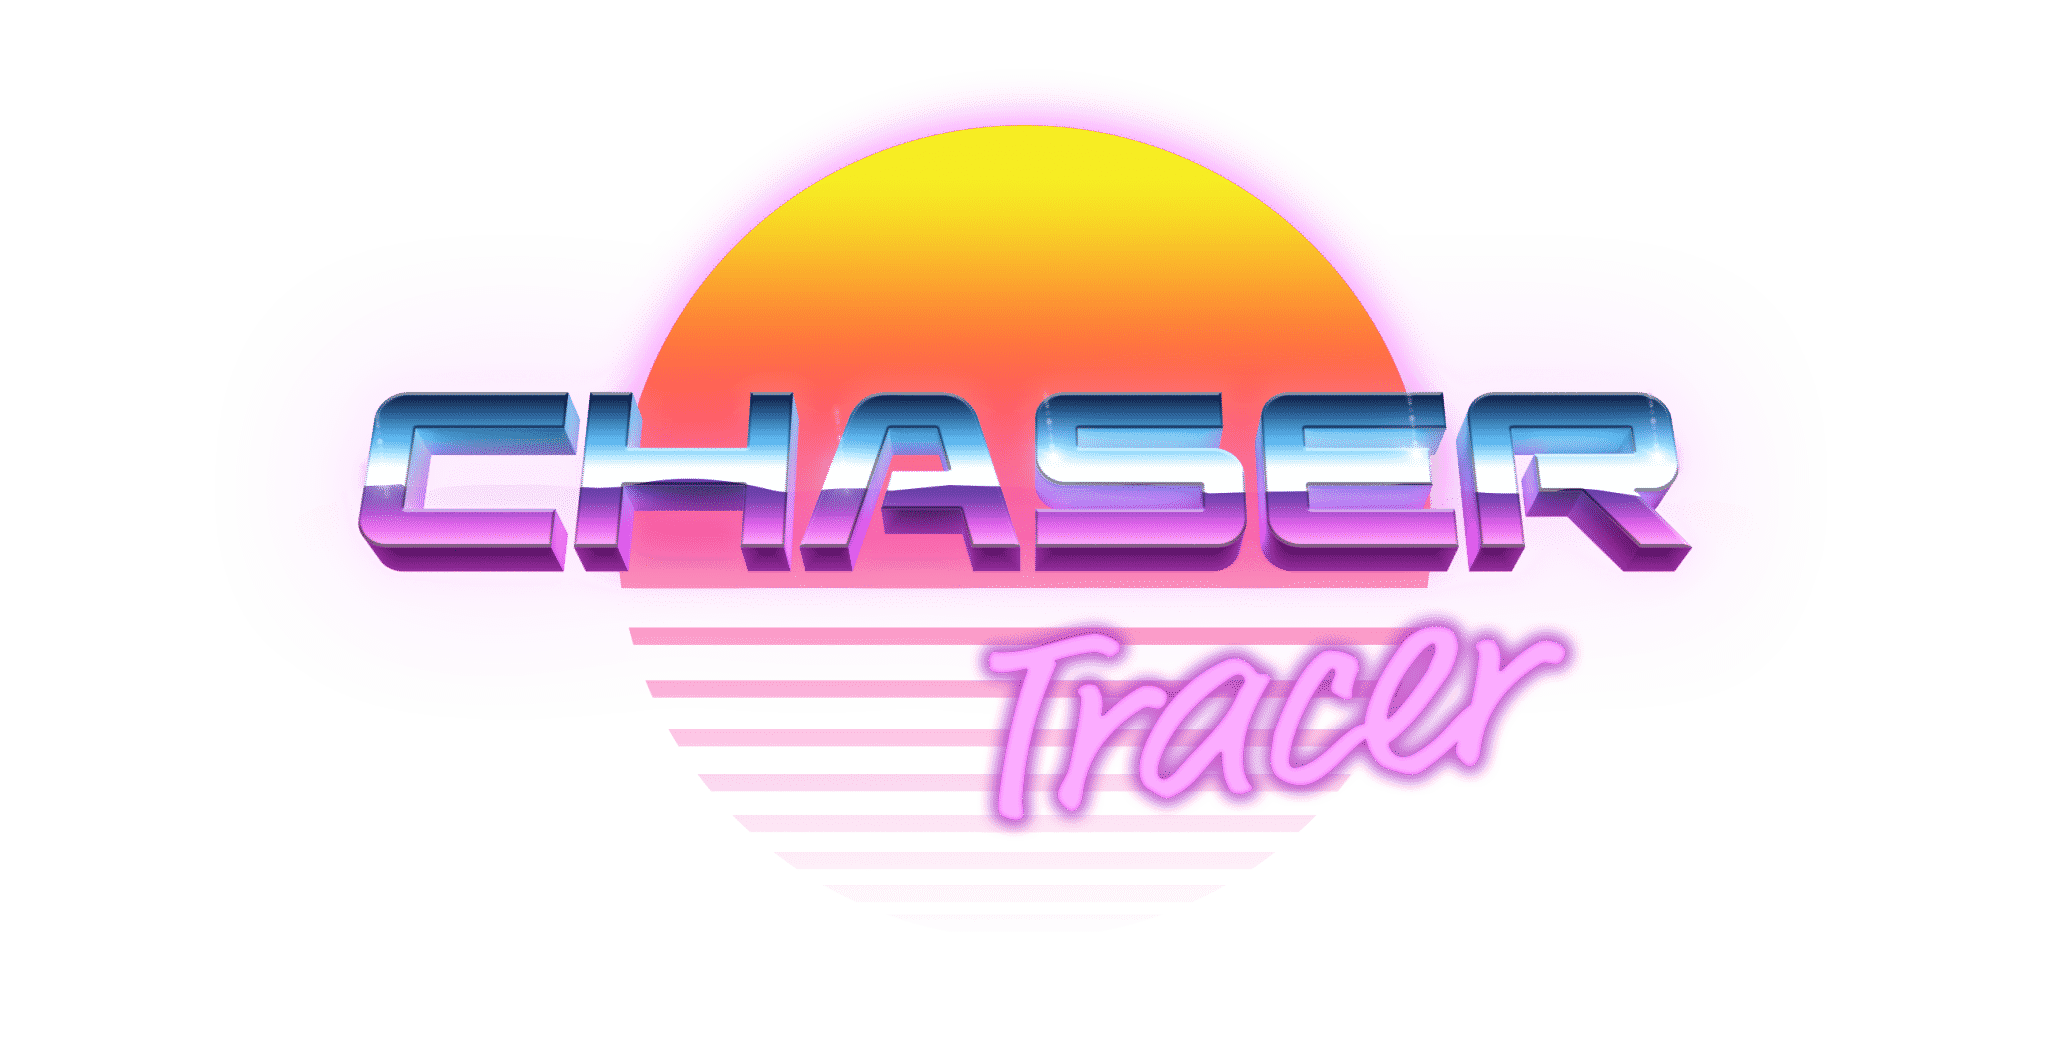 Chaser Tracer